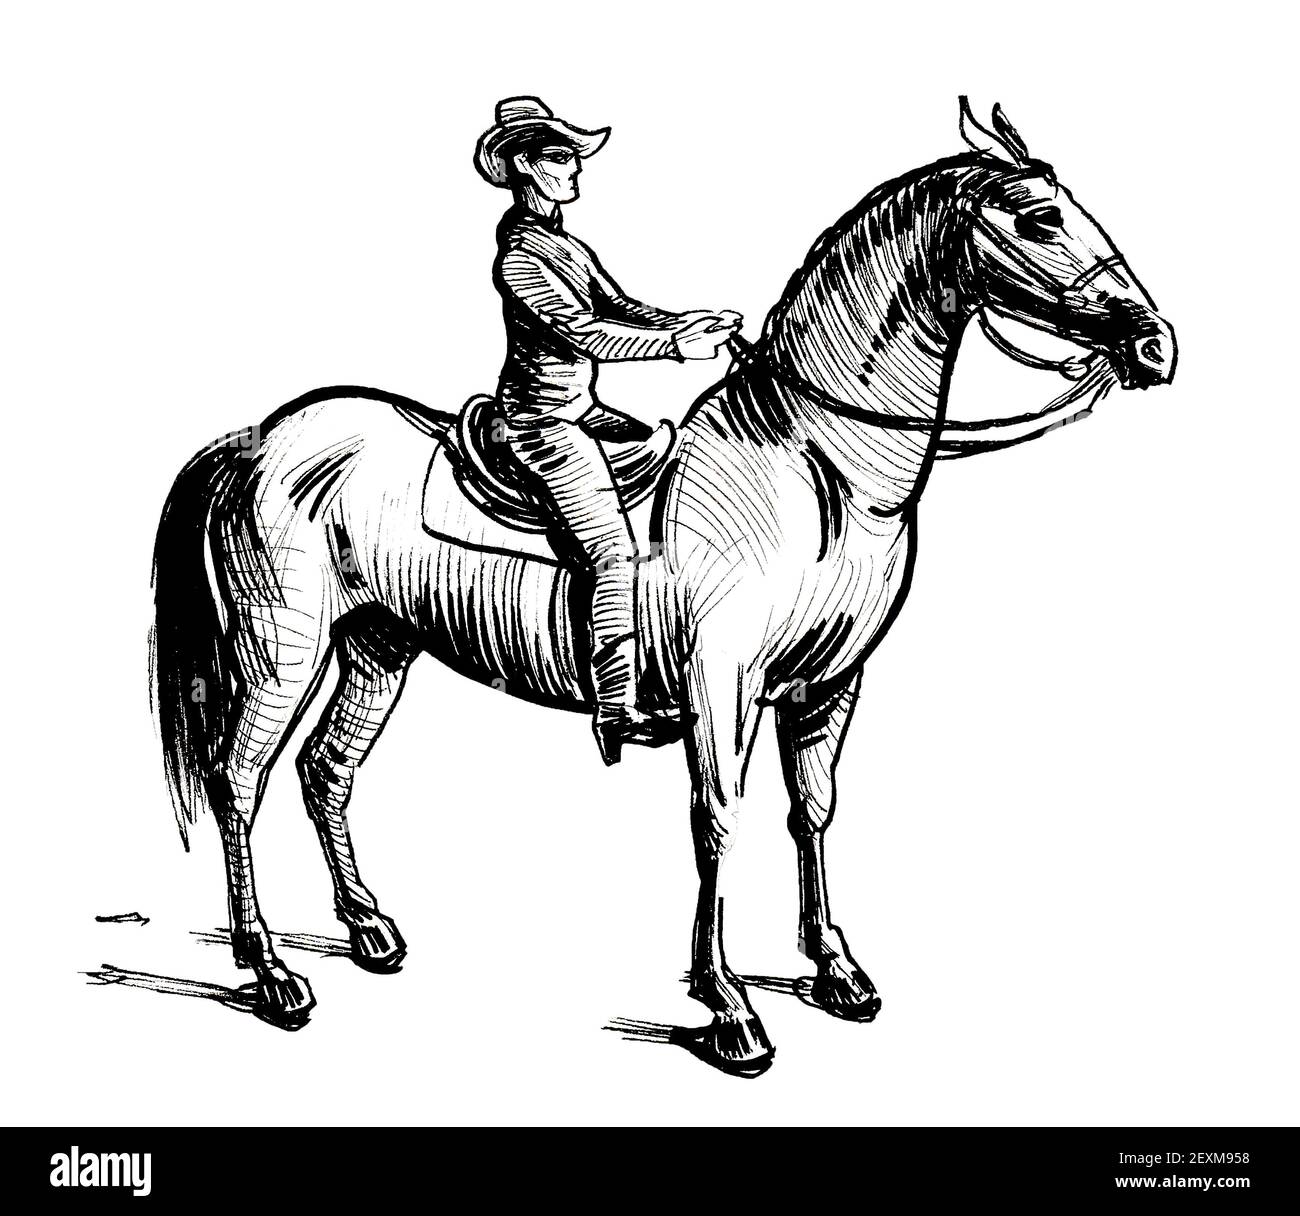 Cowboy Drawing Stock Illustrations – 11,307 Cowboy Drawing Stock  Illustrations, Vectors & Clipart - Dreamstime